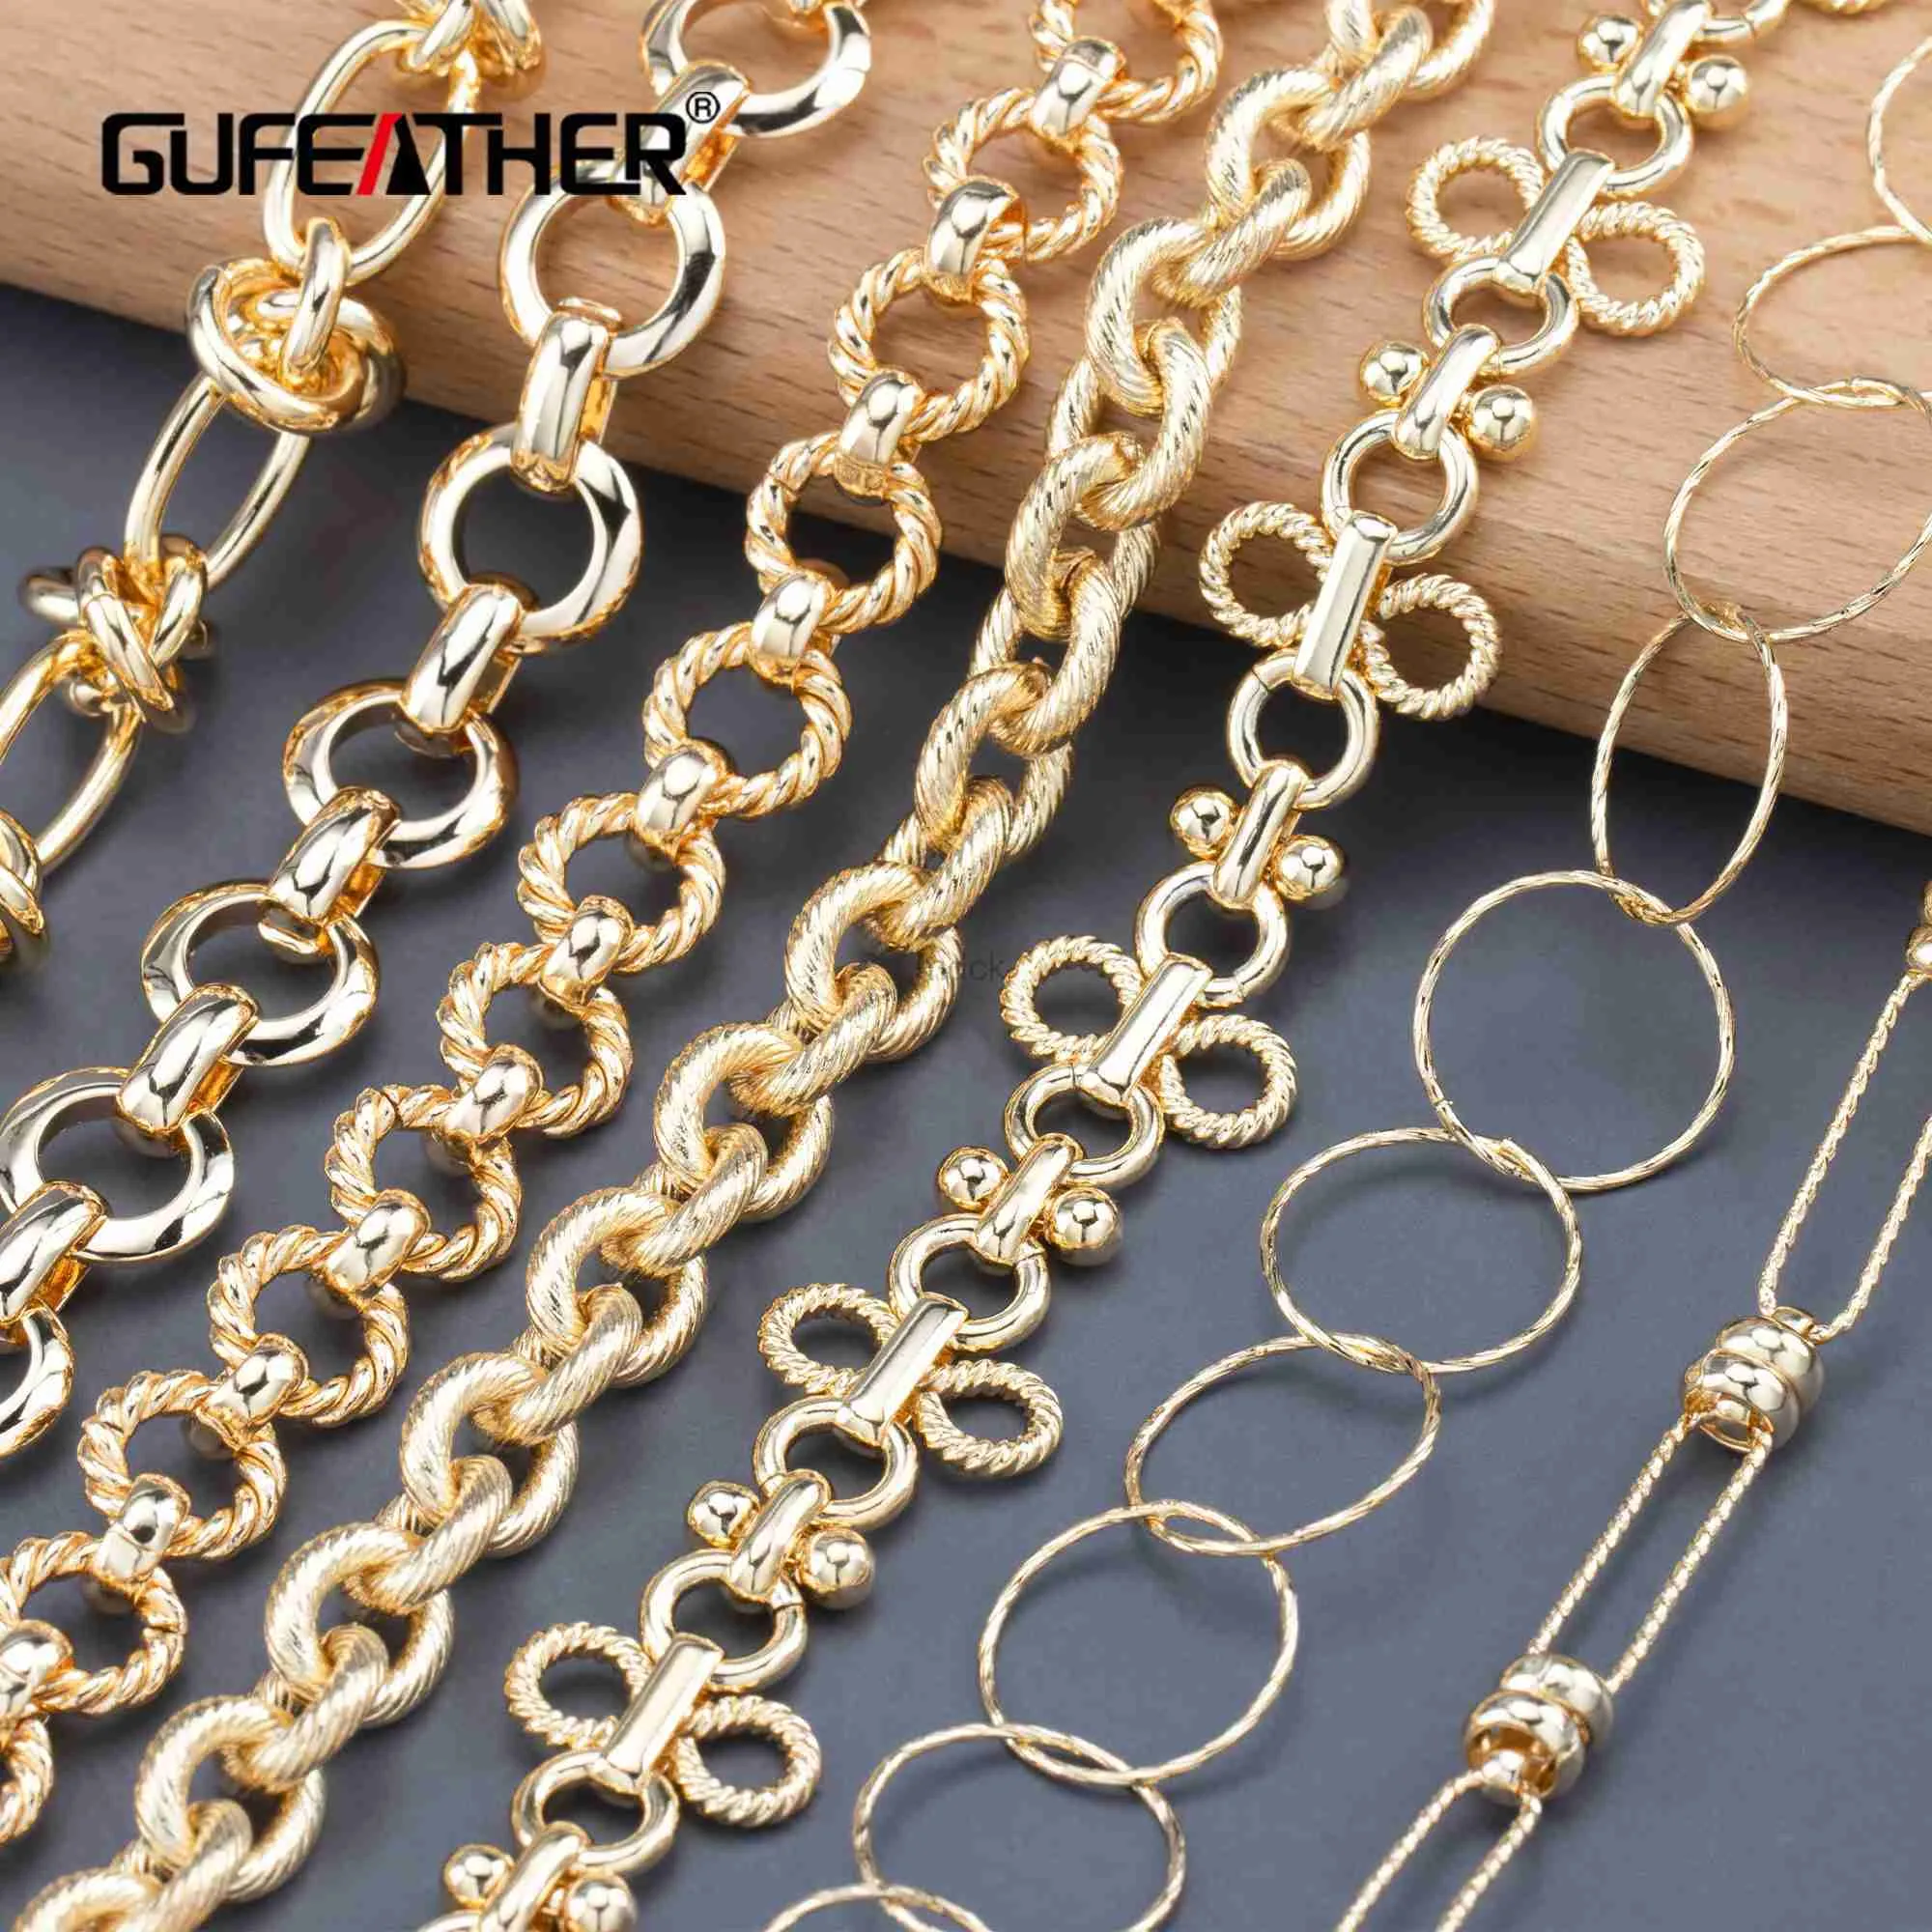 Anhänger Halsketten Gufeather C170Diy Kettenpass Reachnickel Free18K Gold PlatedCopper MetalcharmaSdiy Armband Halskette